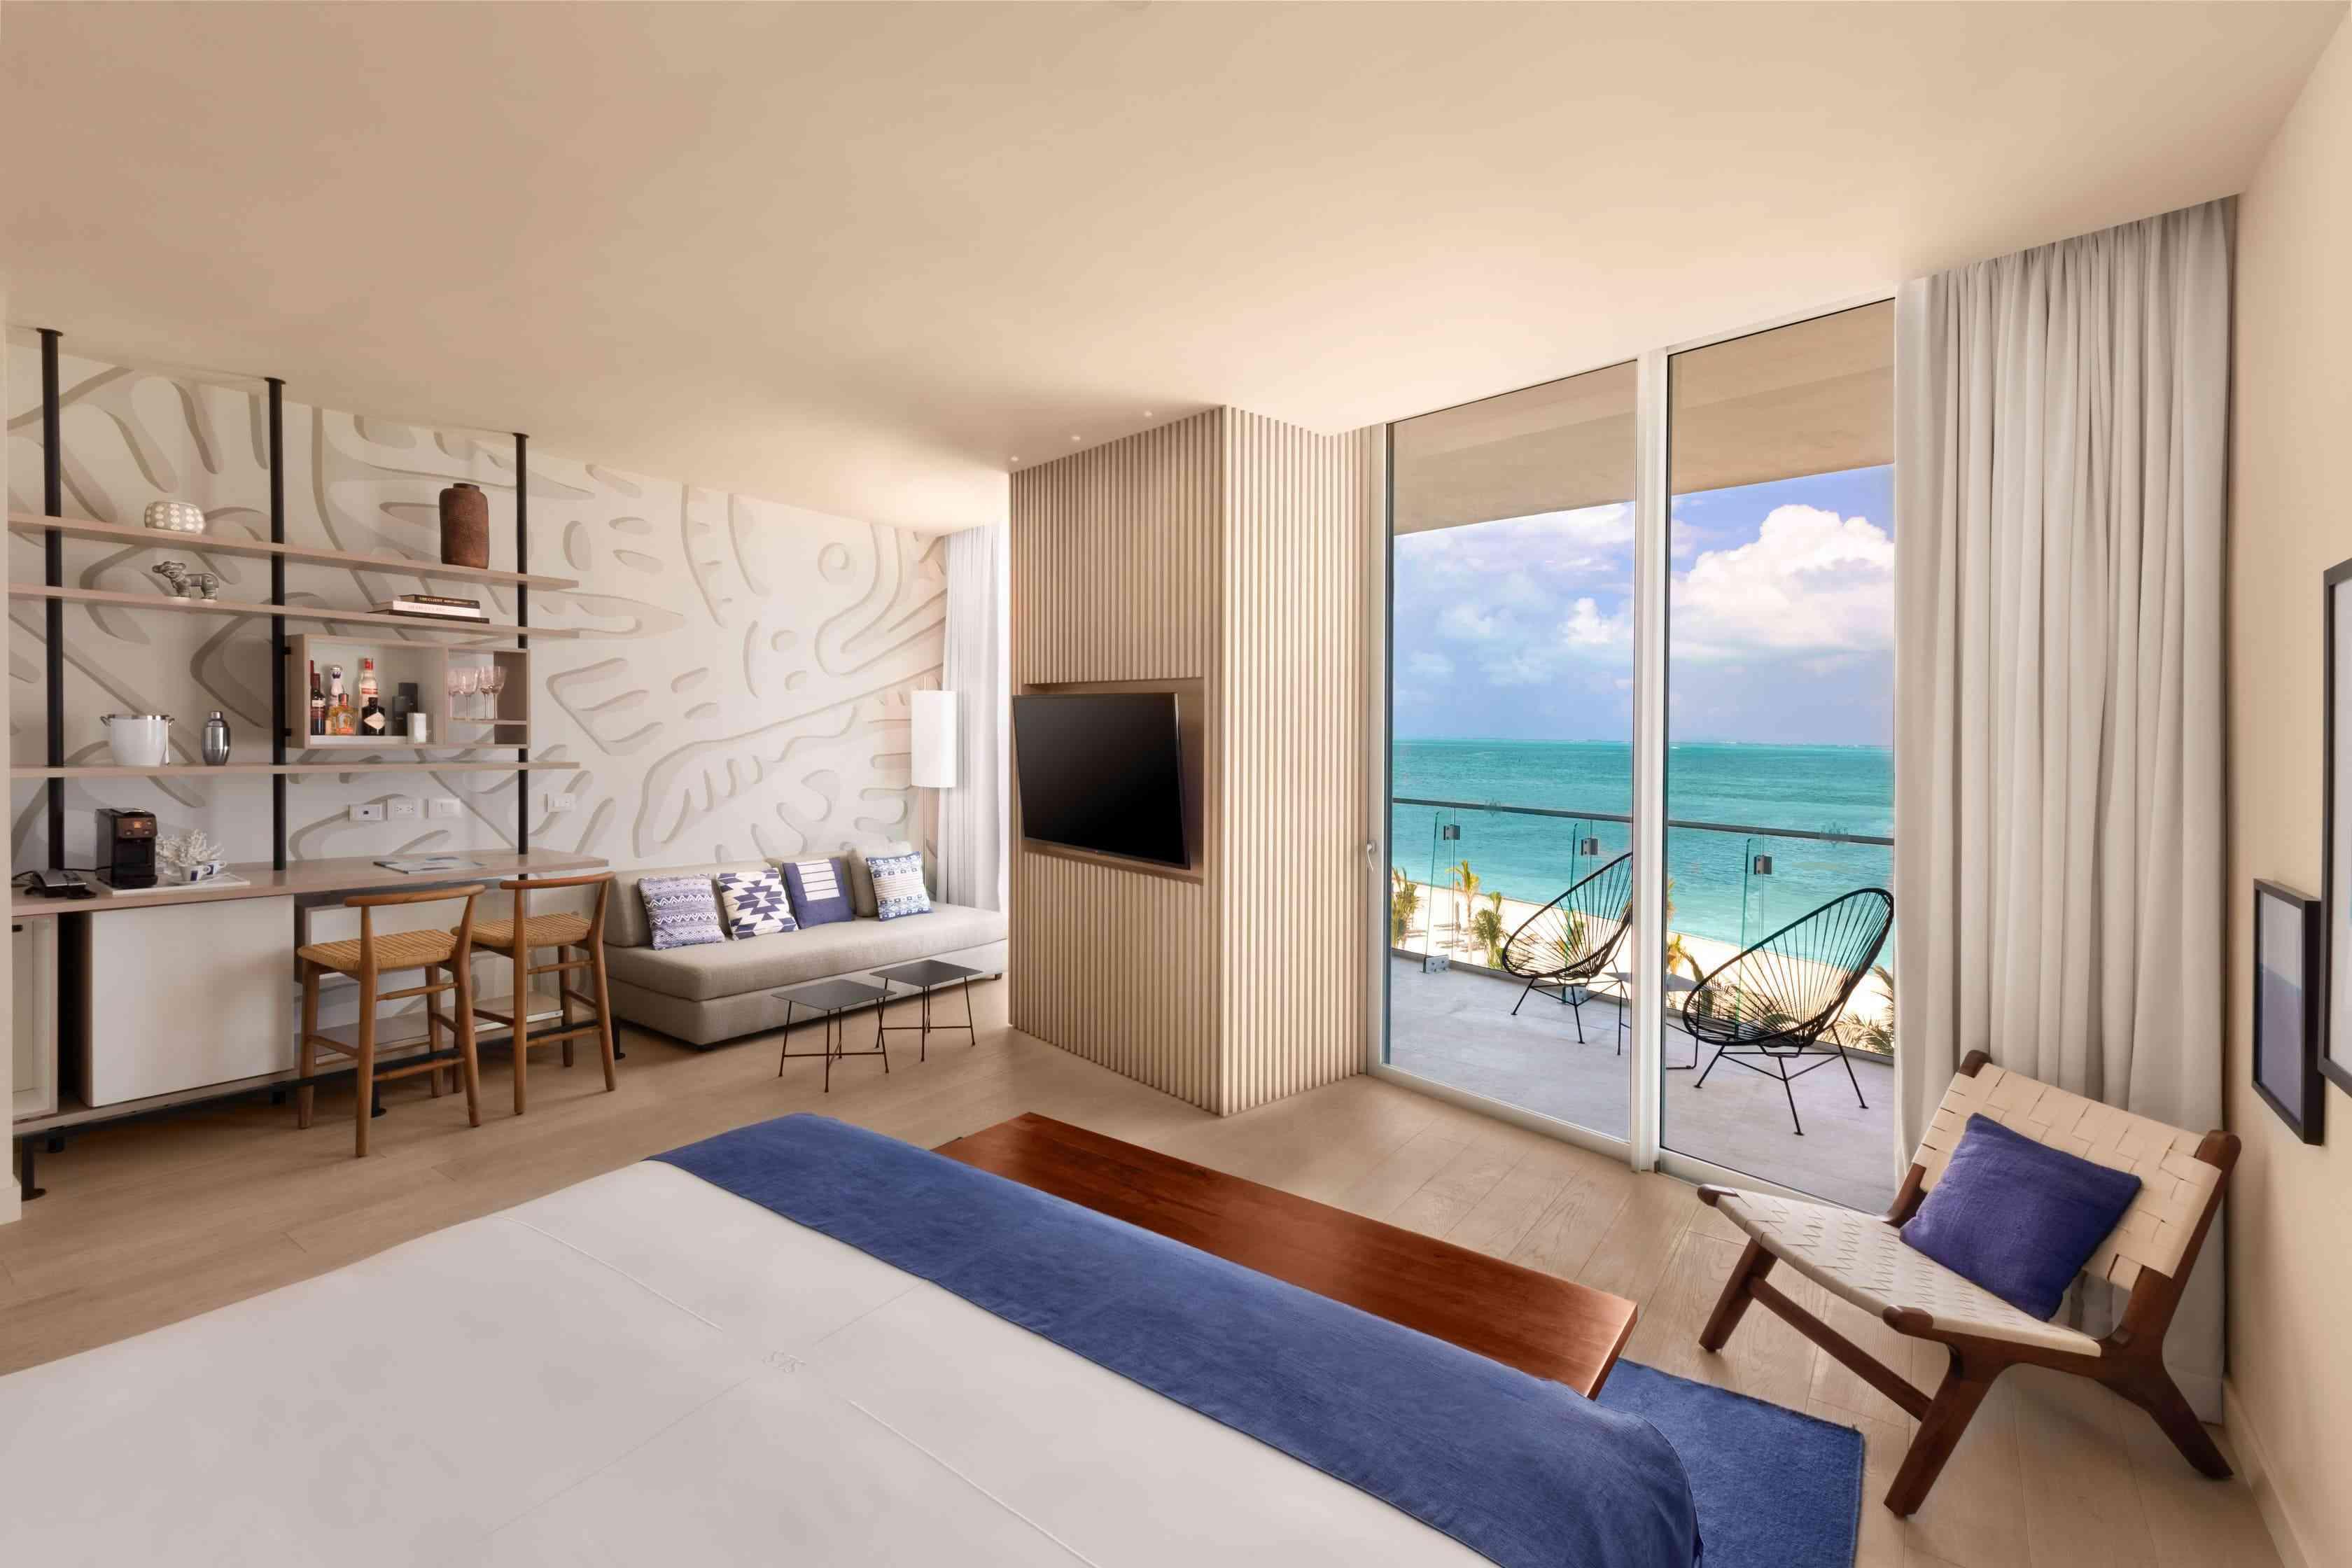 Plan large de la chambre lit king-size de luxe face à l'océan qui comprend un bureau, un coin salon, une télévision et un balcon avec vue sur l'océan